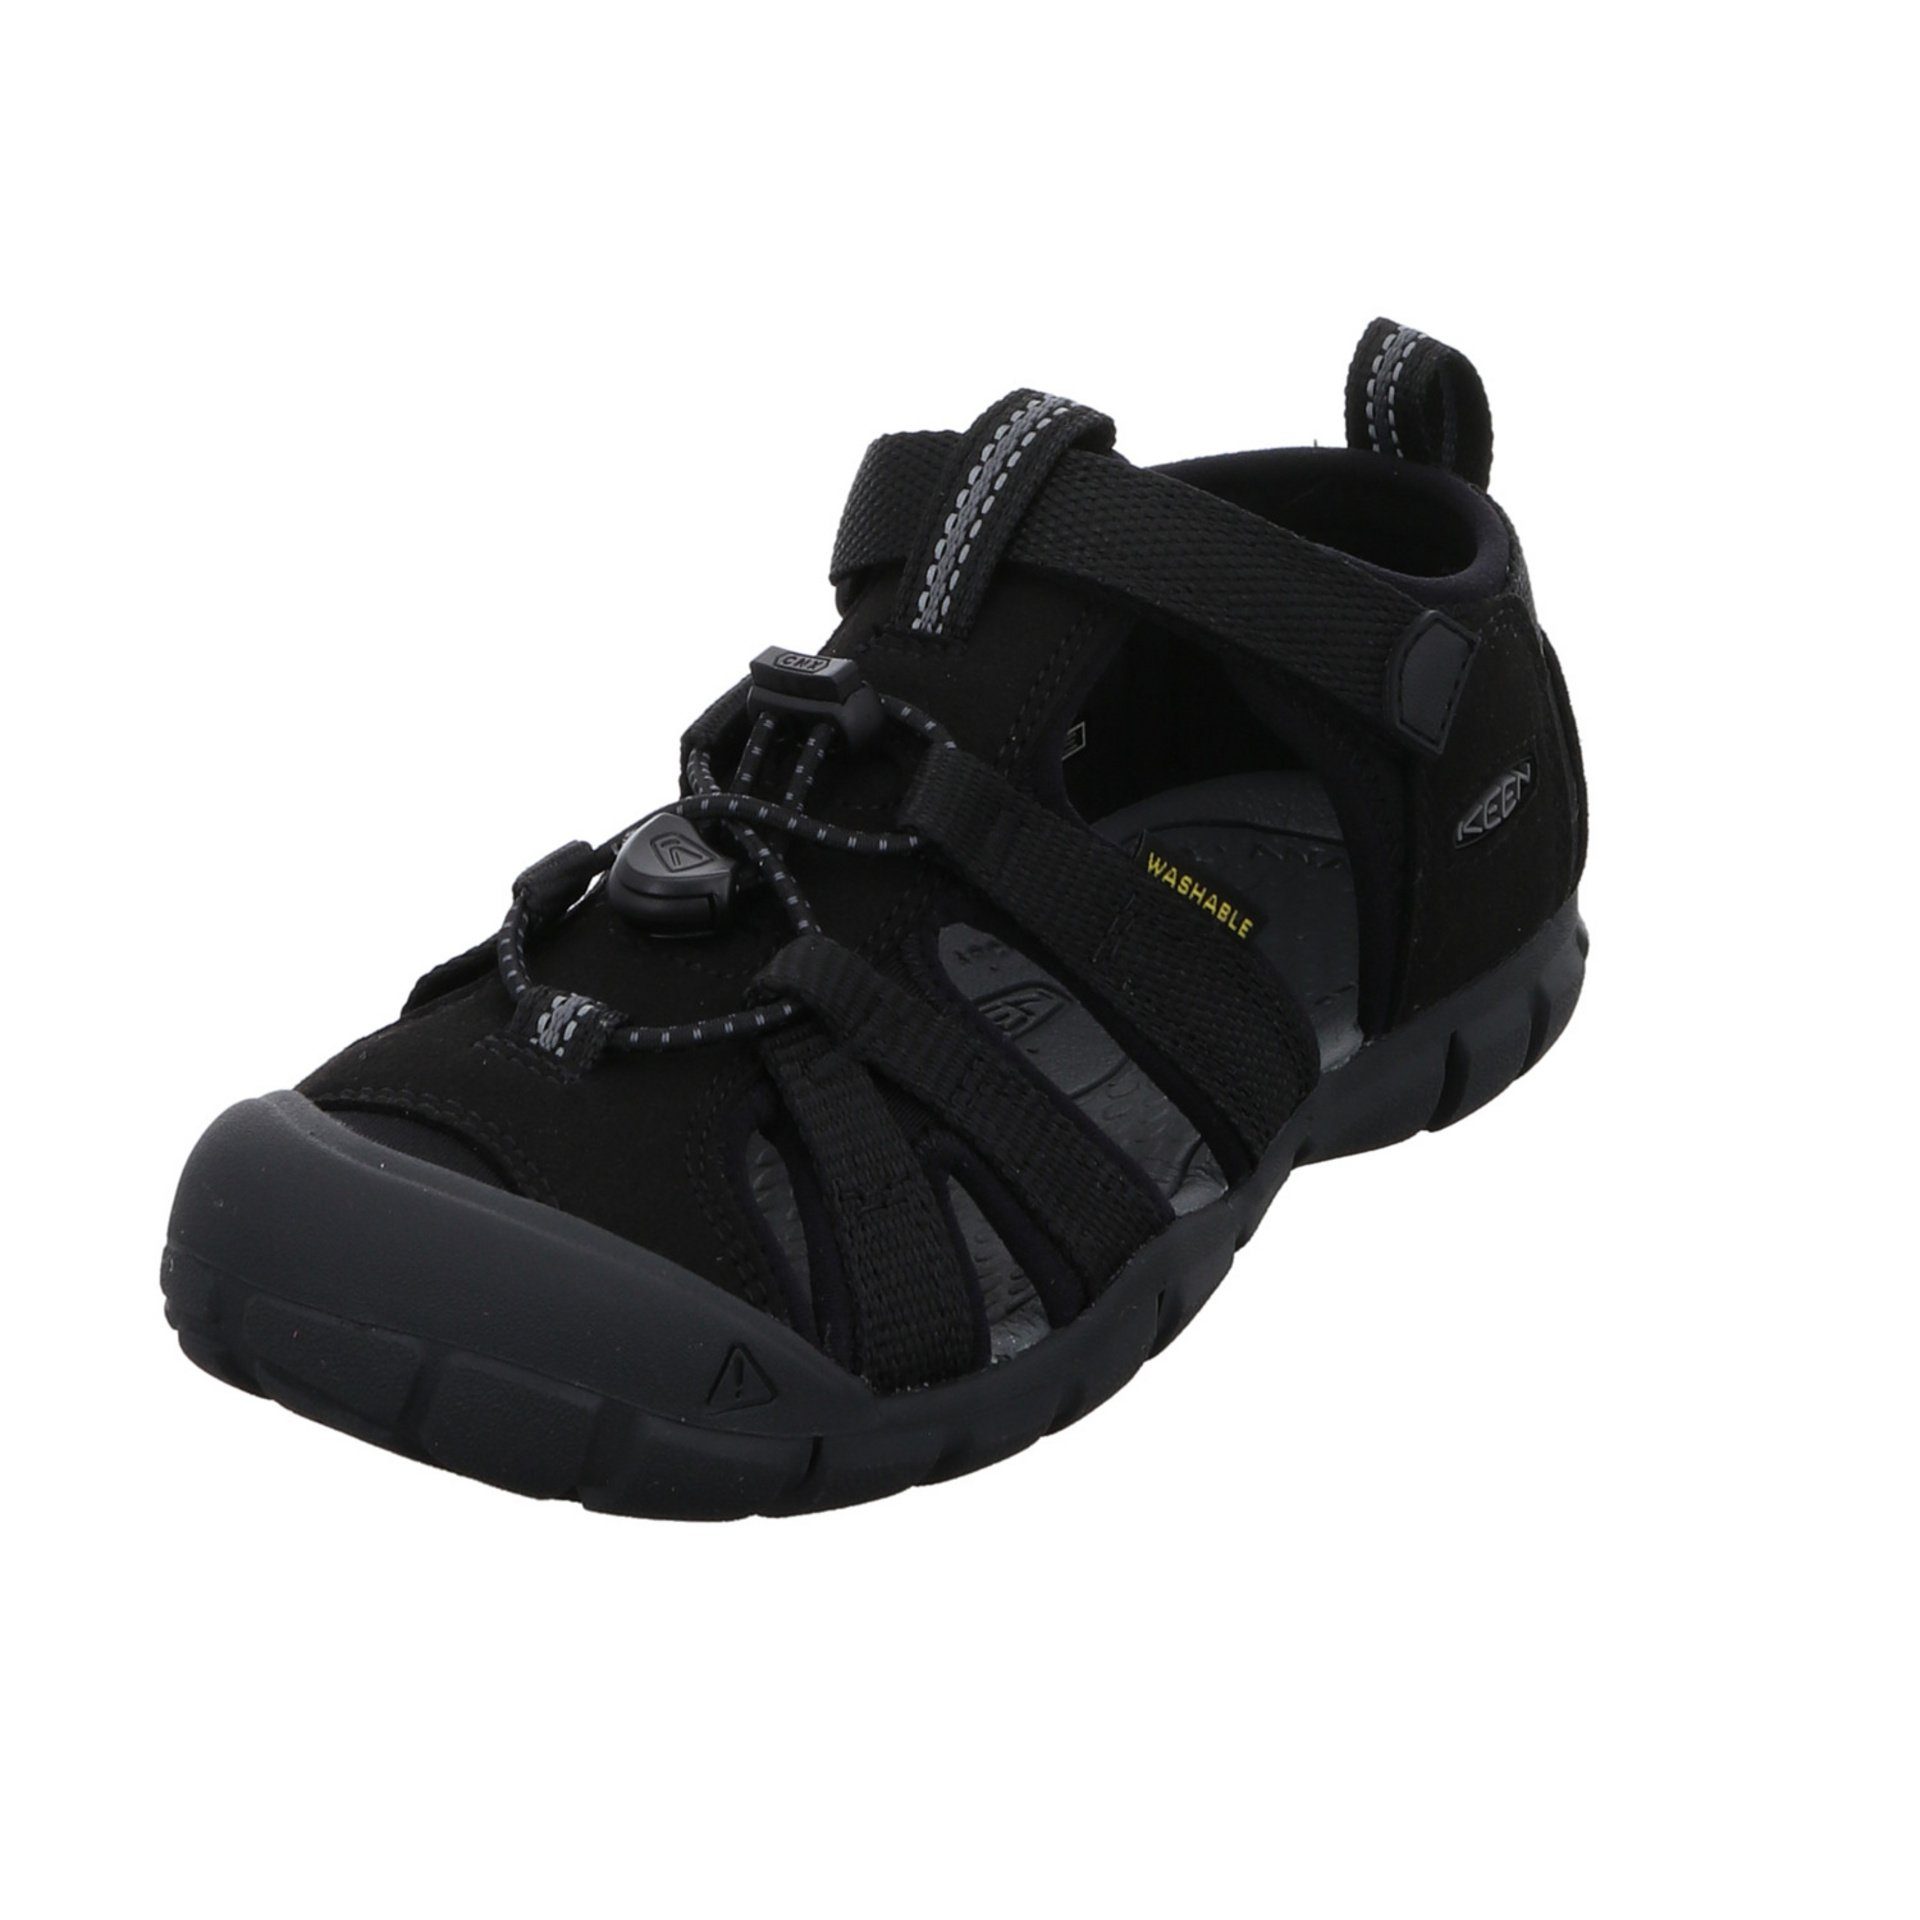 Sandale Textil Schuhe dunkel Jungen schwarz Keen Sandalen